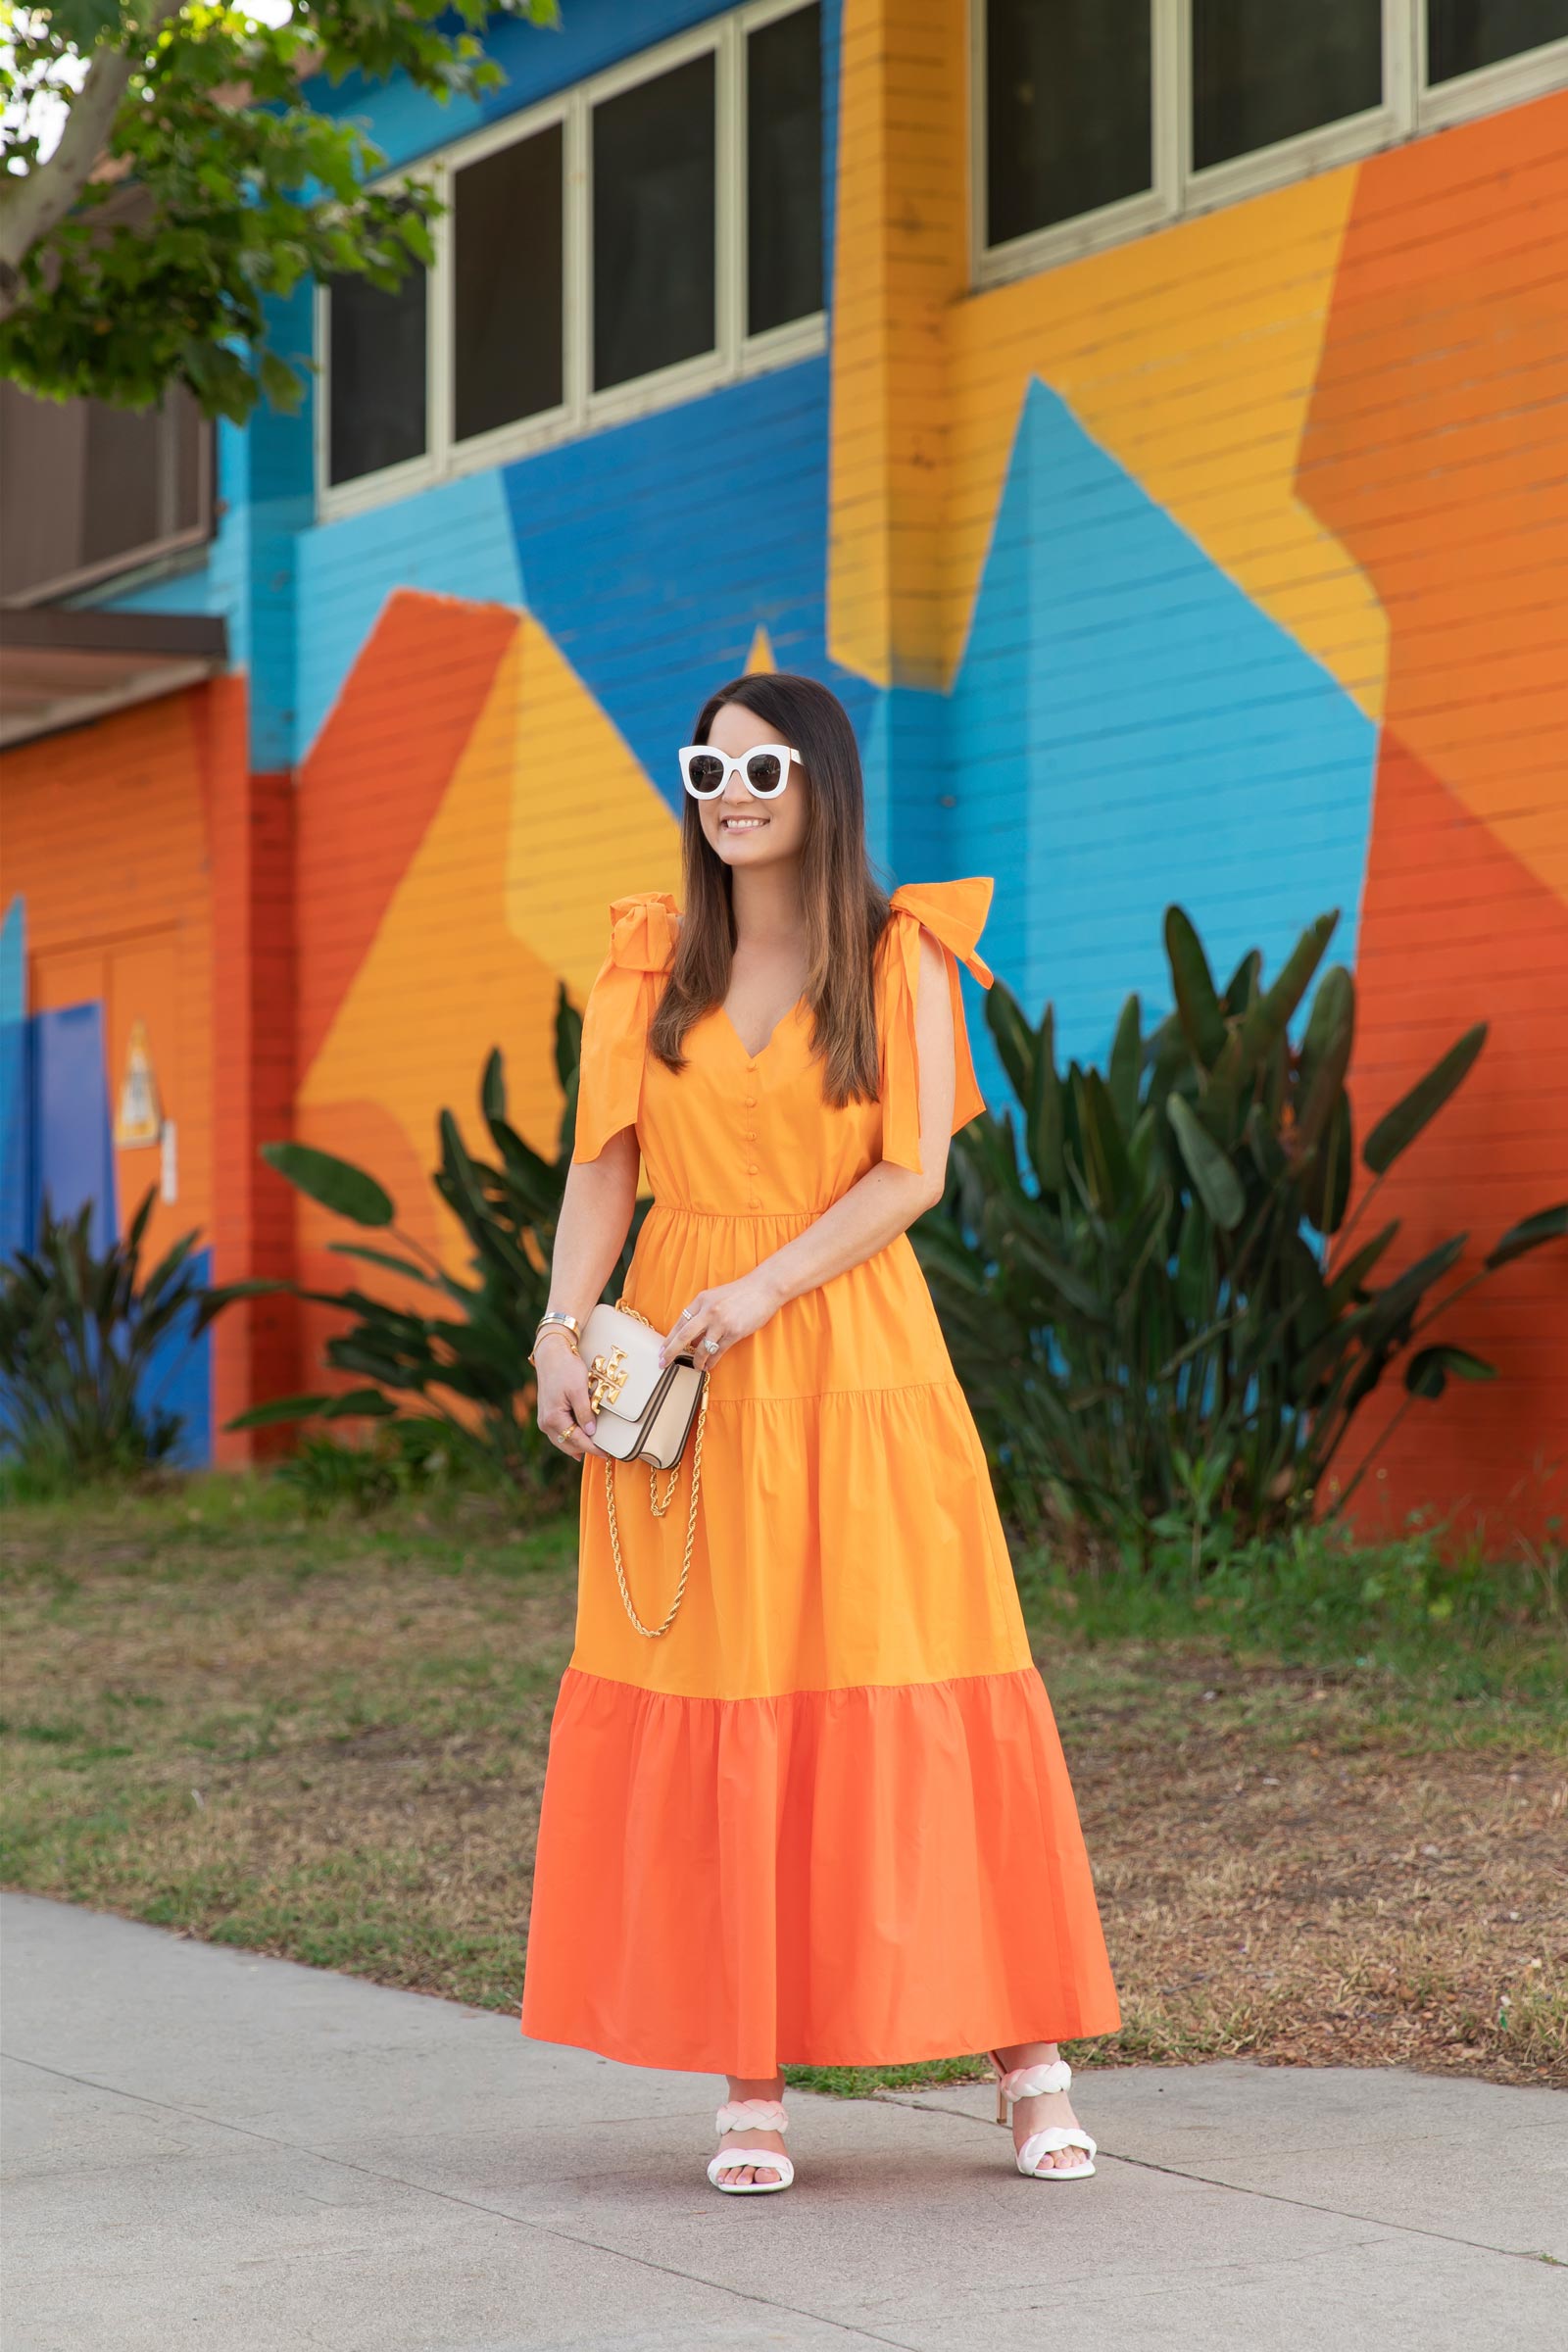 Rent the Runway Orange Tiered Dress